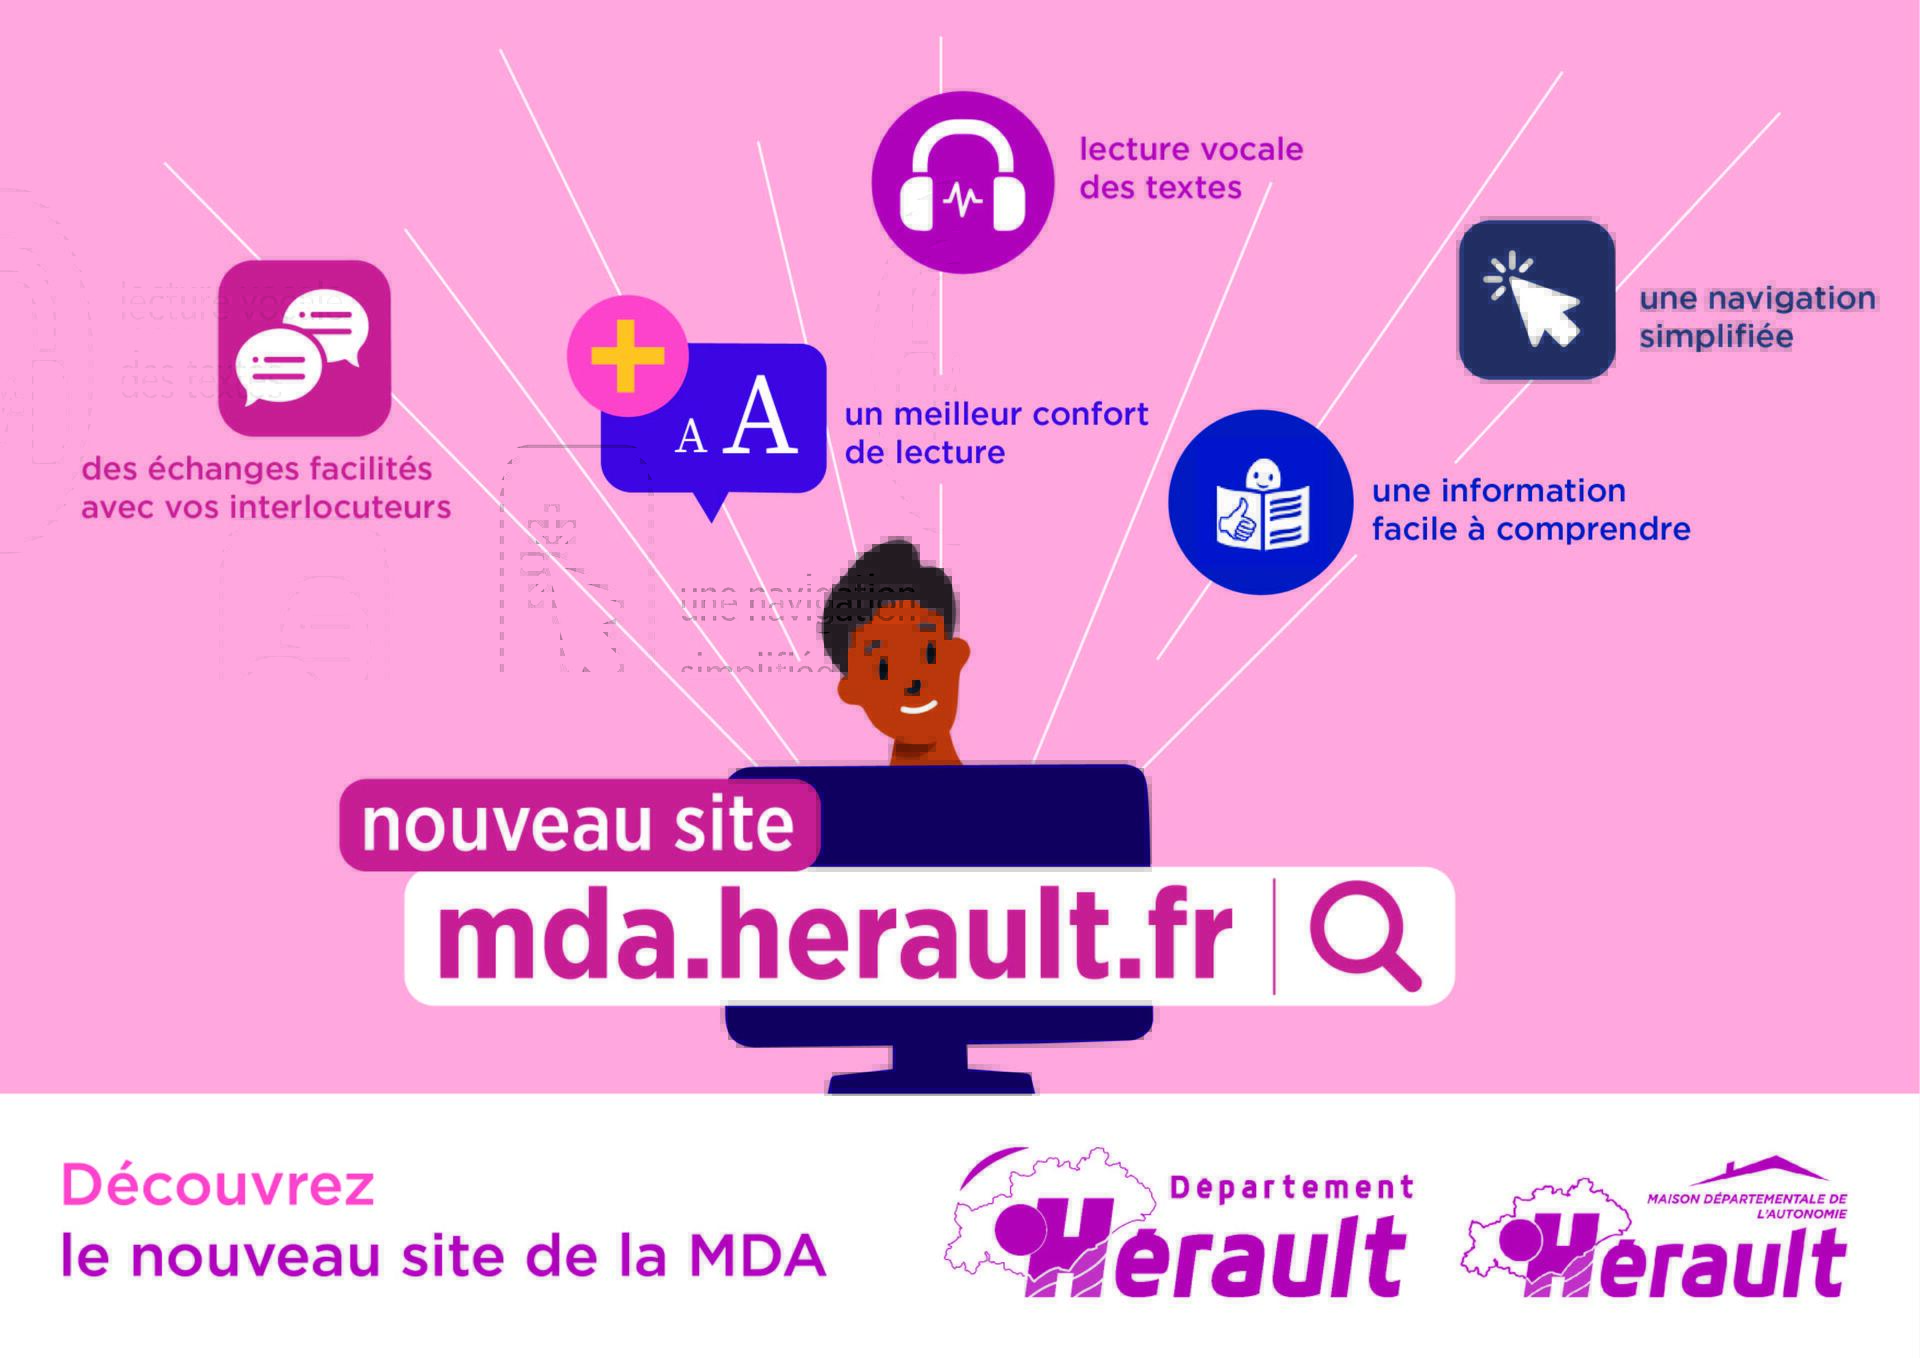 MDA departement herault